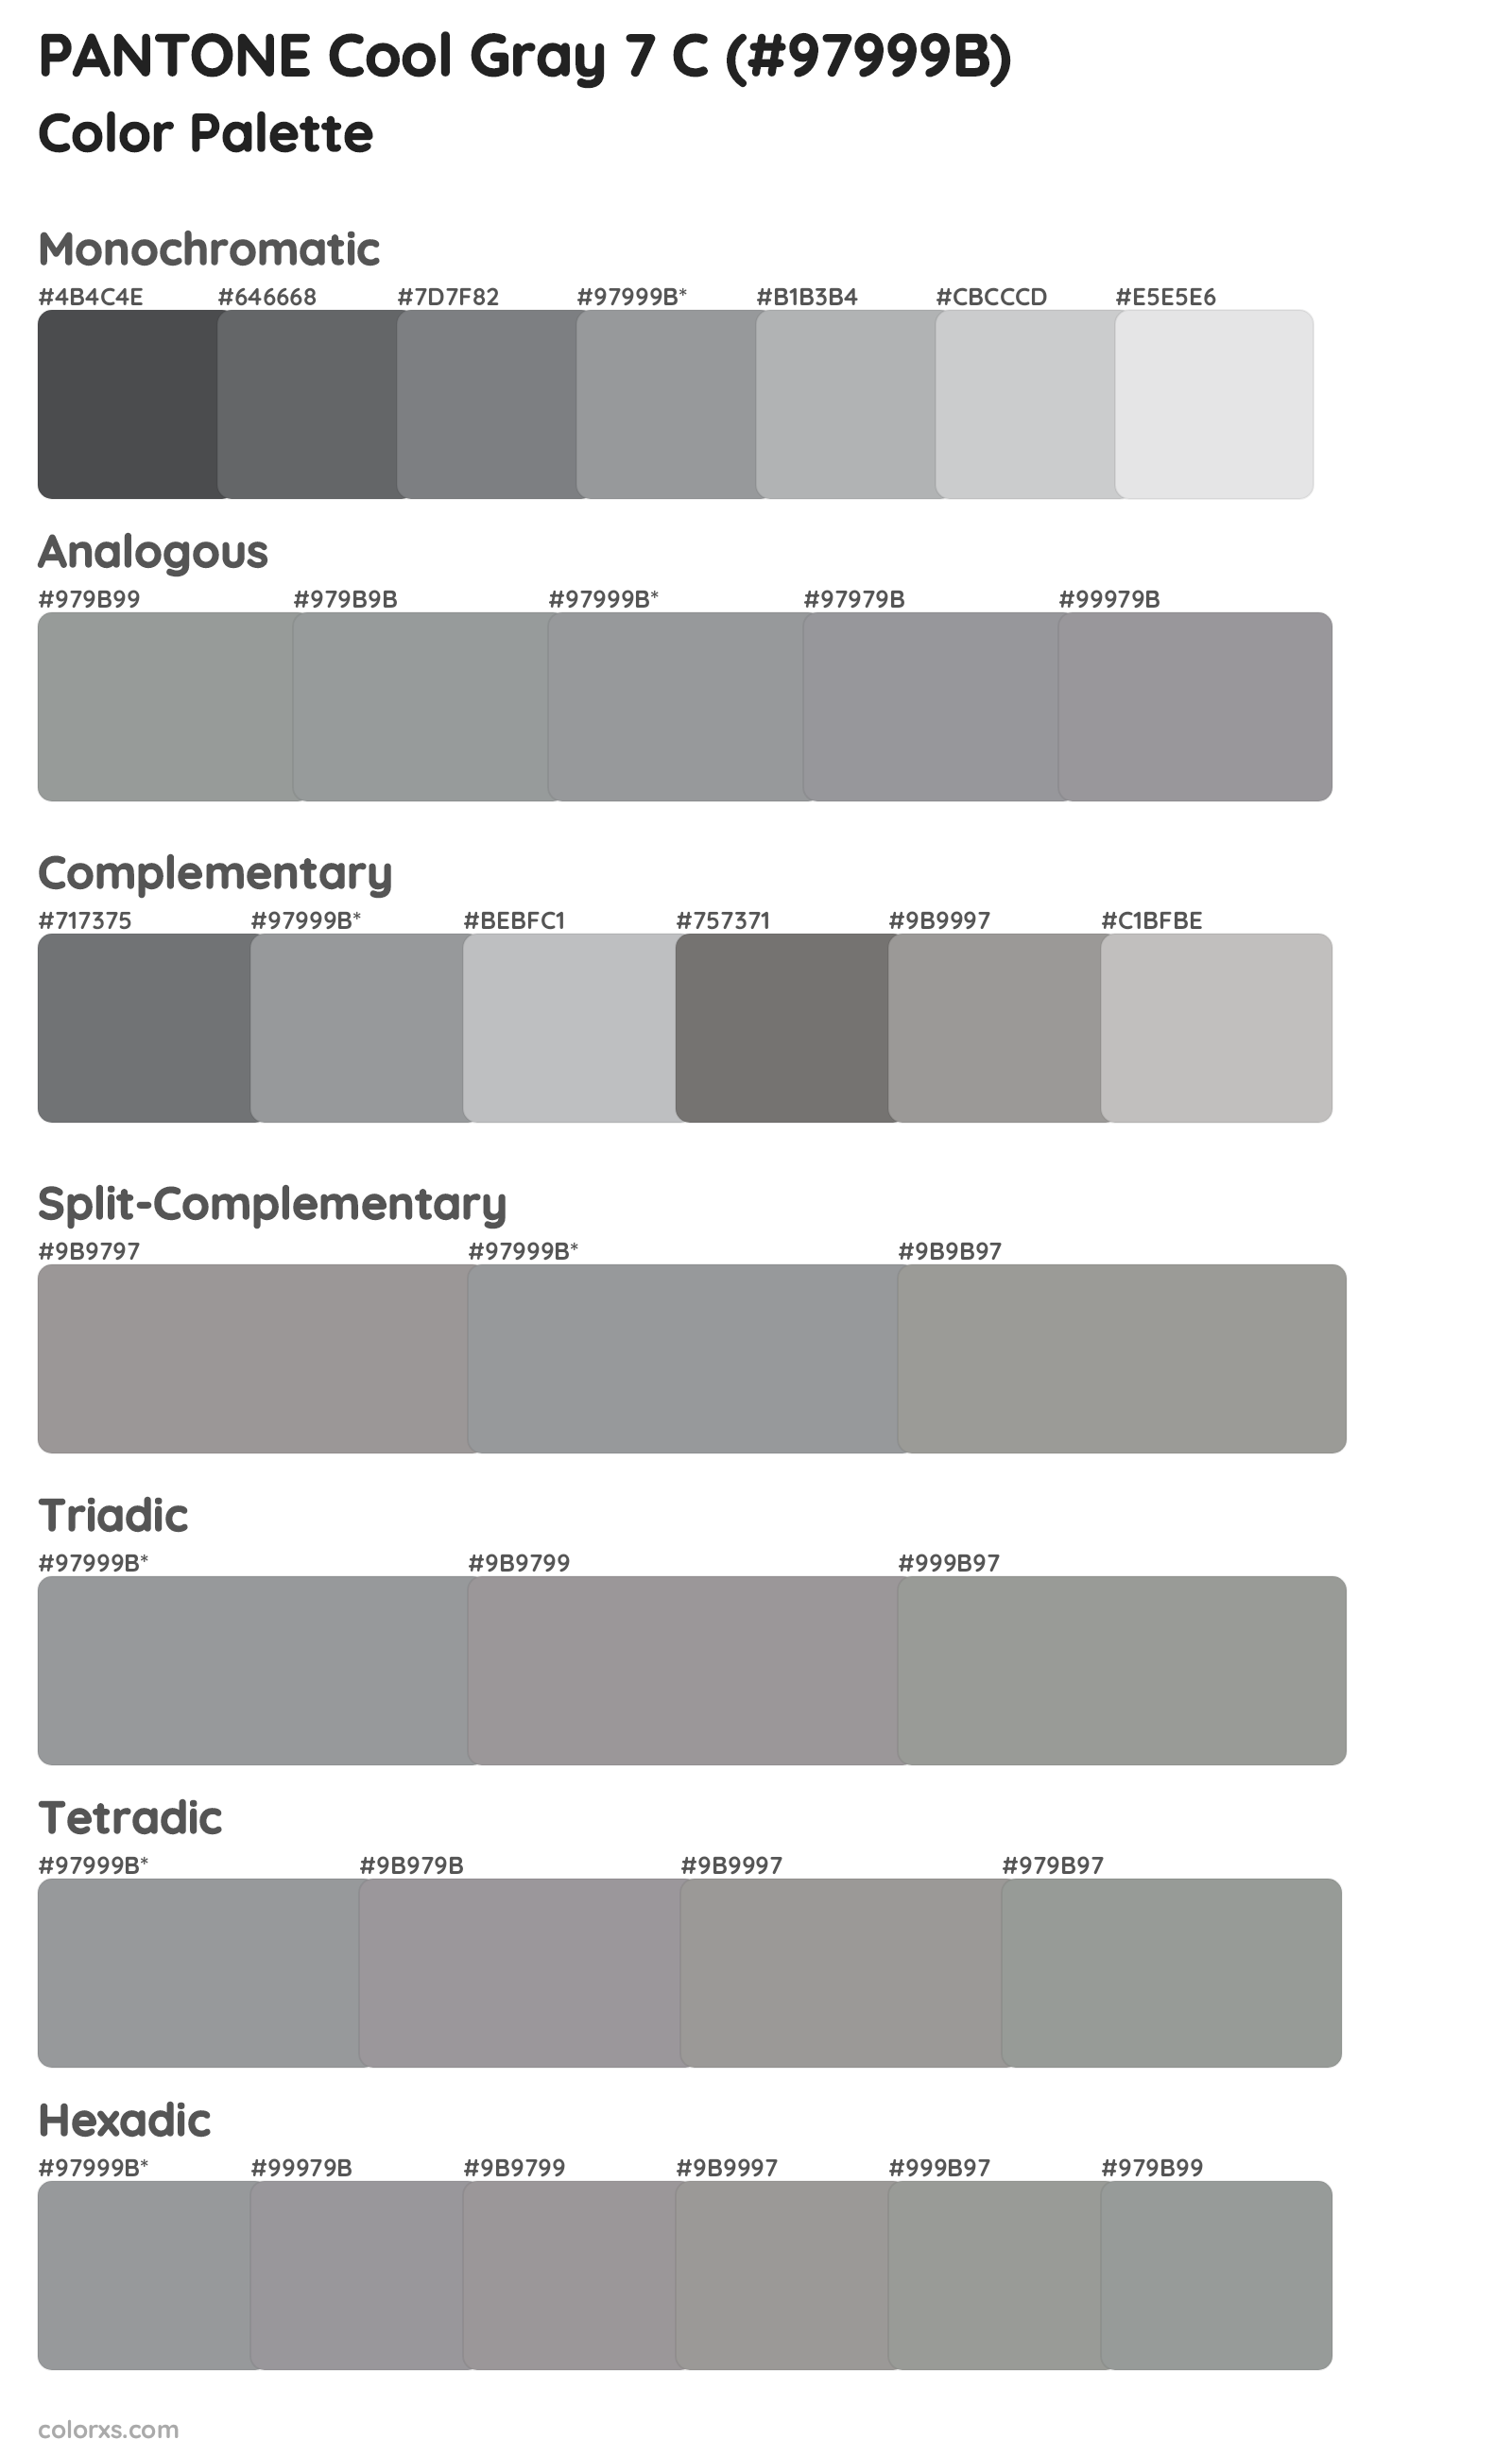 PANTONE Cool Gray 7 C Color Scheme Palettes